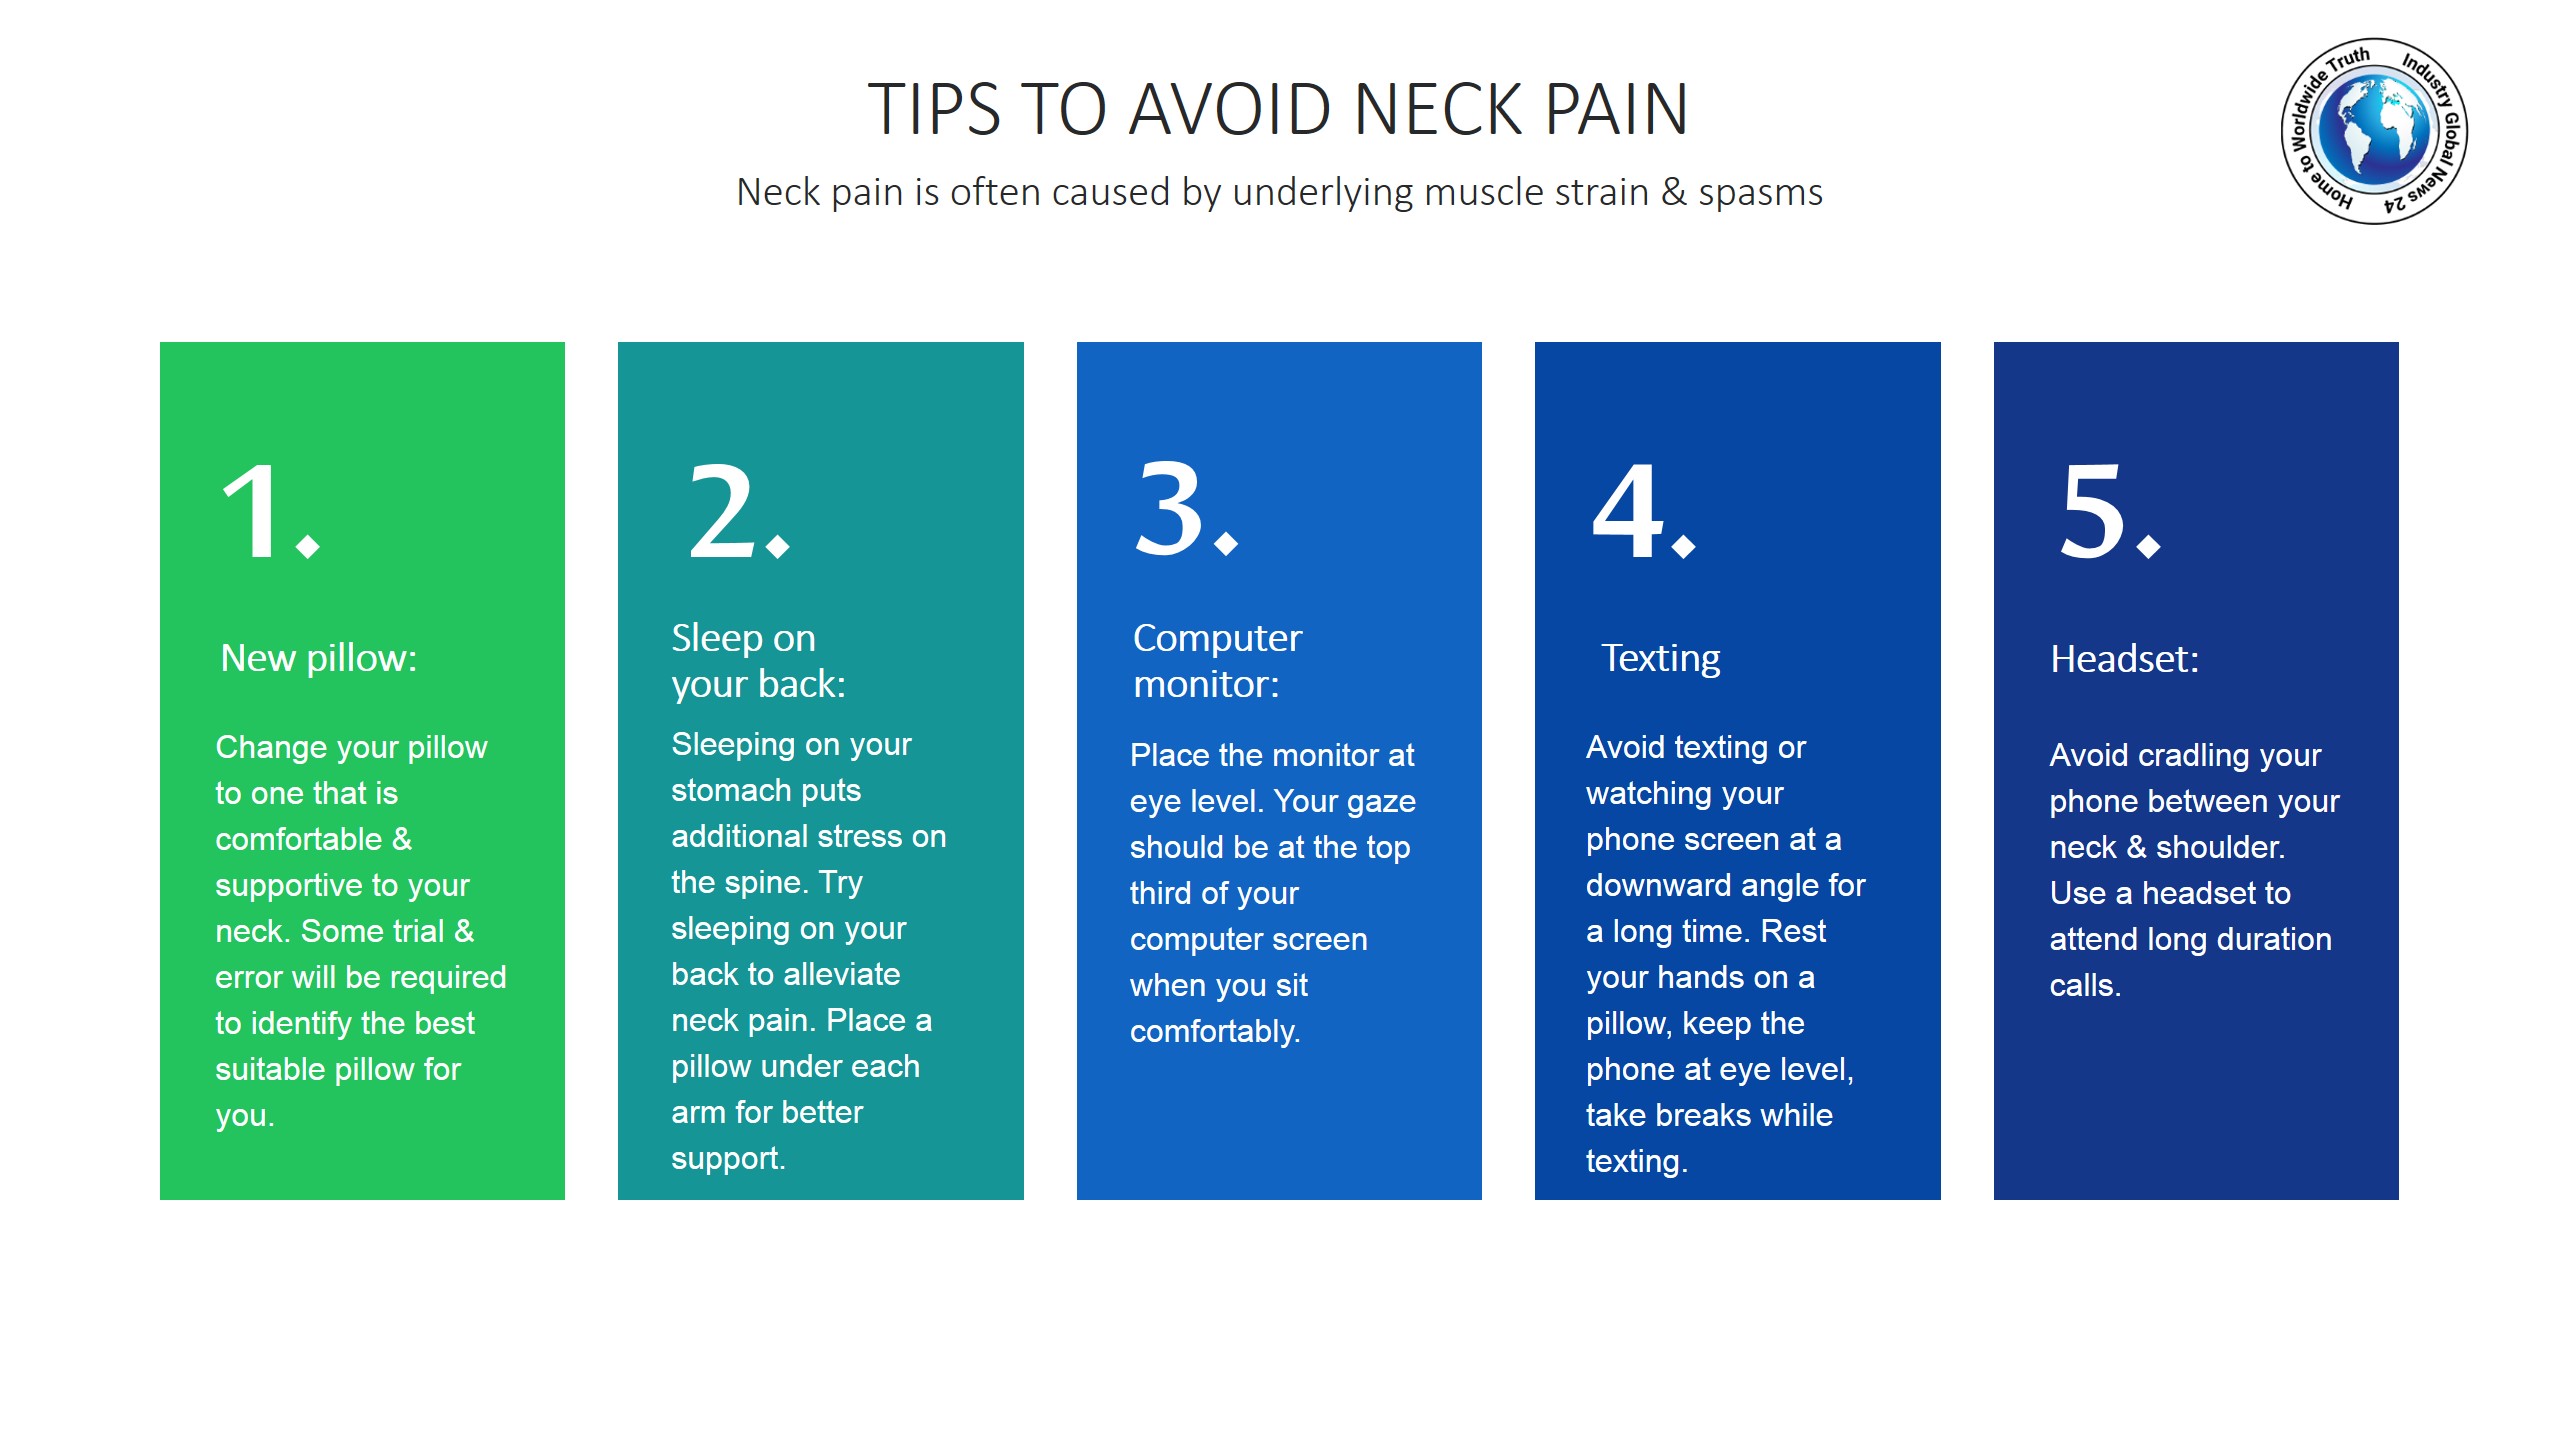 Tips to avoid neck pain